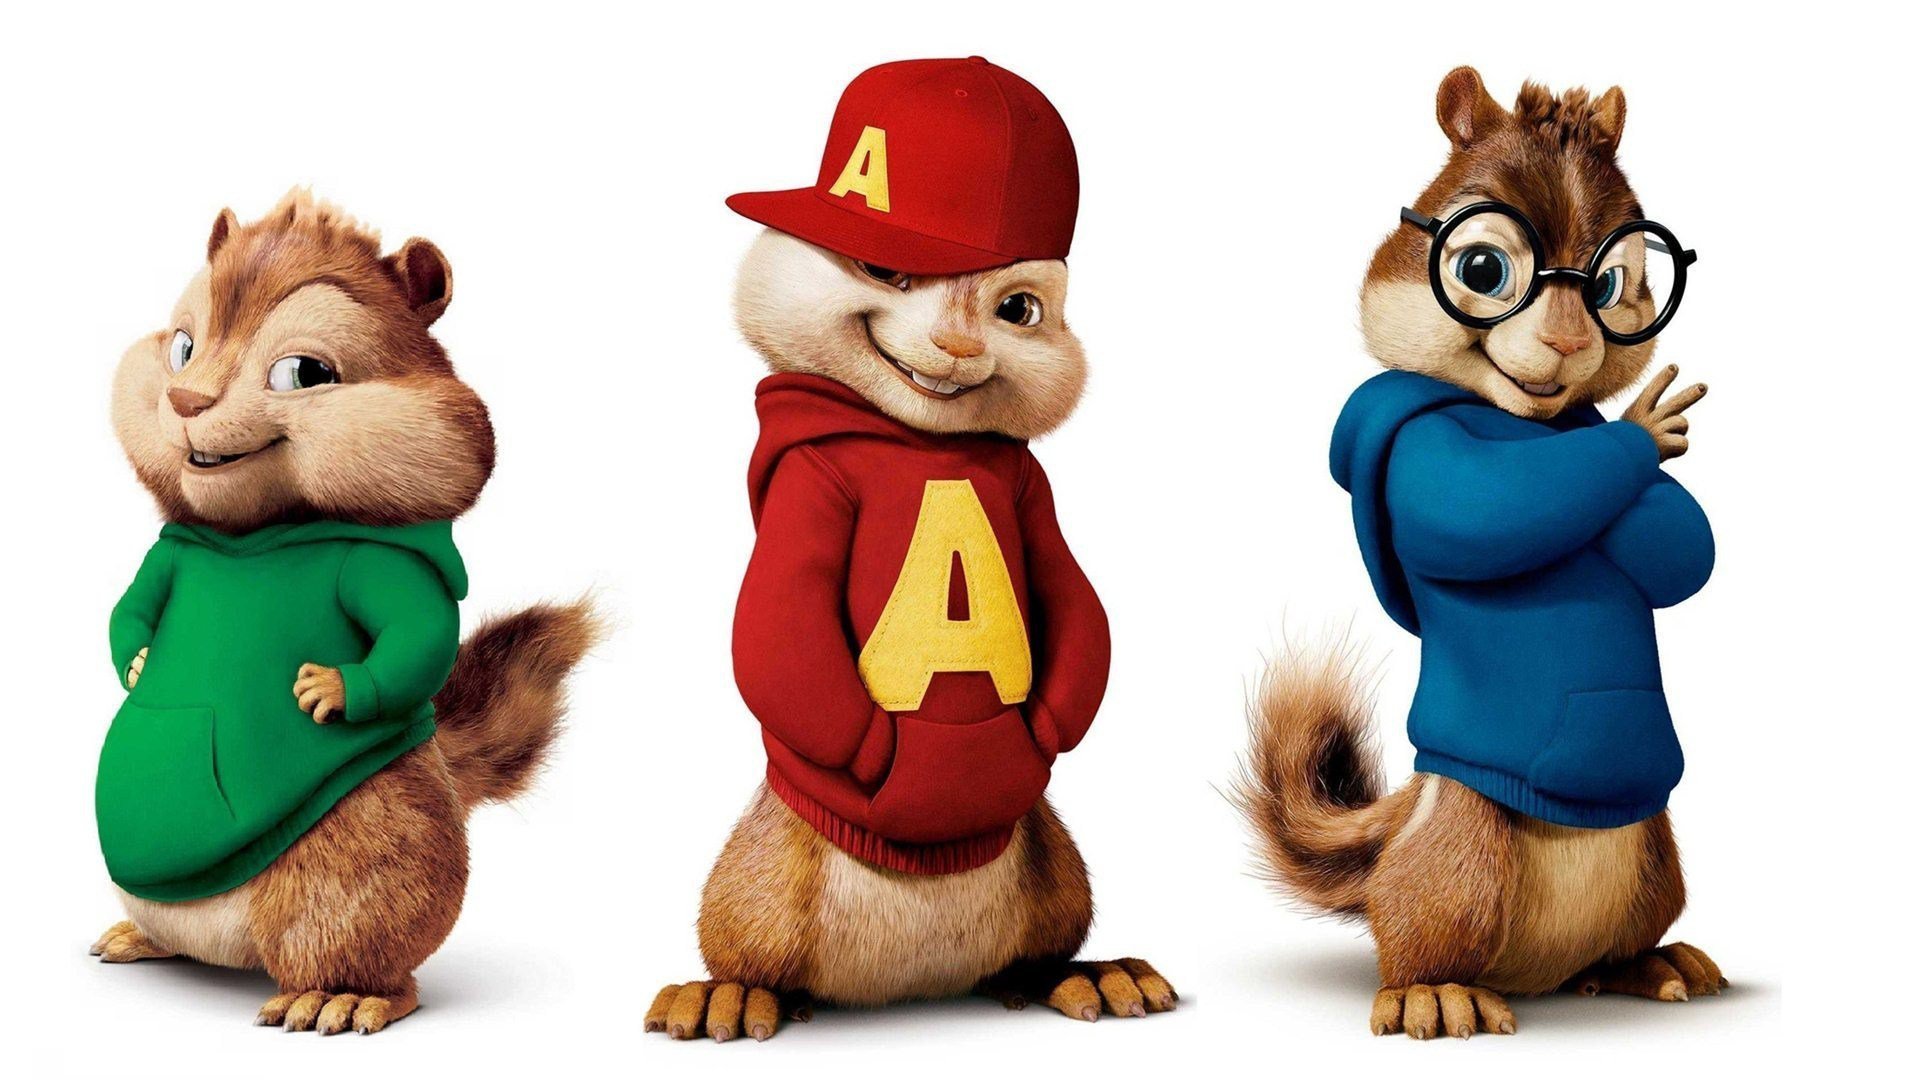 ელვინი და თახვები 4 / Alvin and the Chipmunks: The Road Chip (Elvini Da Taxvebi 4 Qartulad) ქართულად